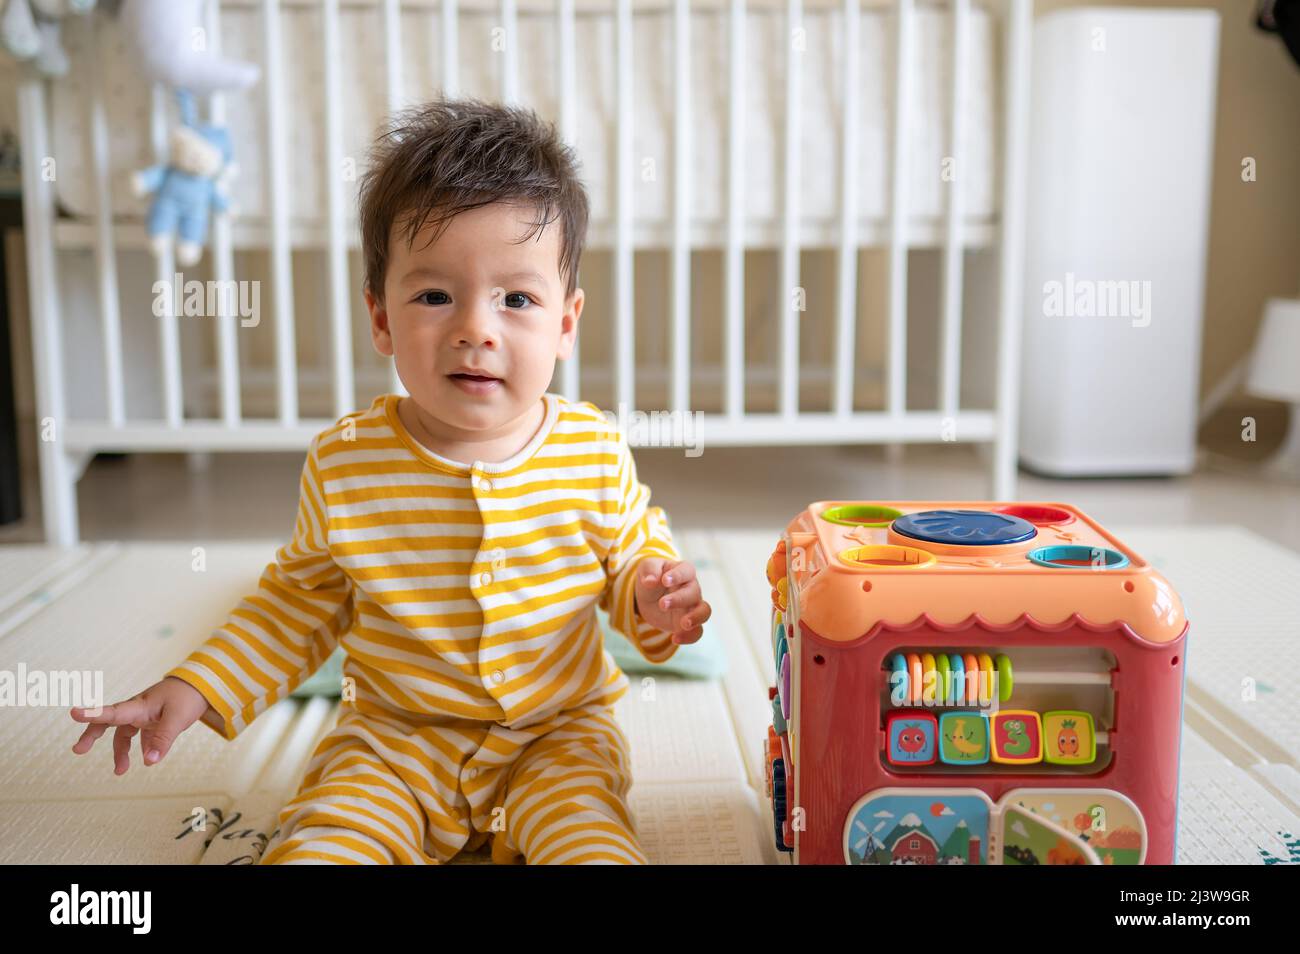 8 Monate alter Junge mit gemischter Rasse, der im Schlafzimmer mit einem gelben Pyjama auf dem Boden sitzt und mit einem Gummispiel bedeckt ist Stockfoto